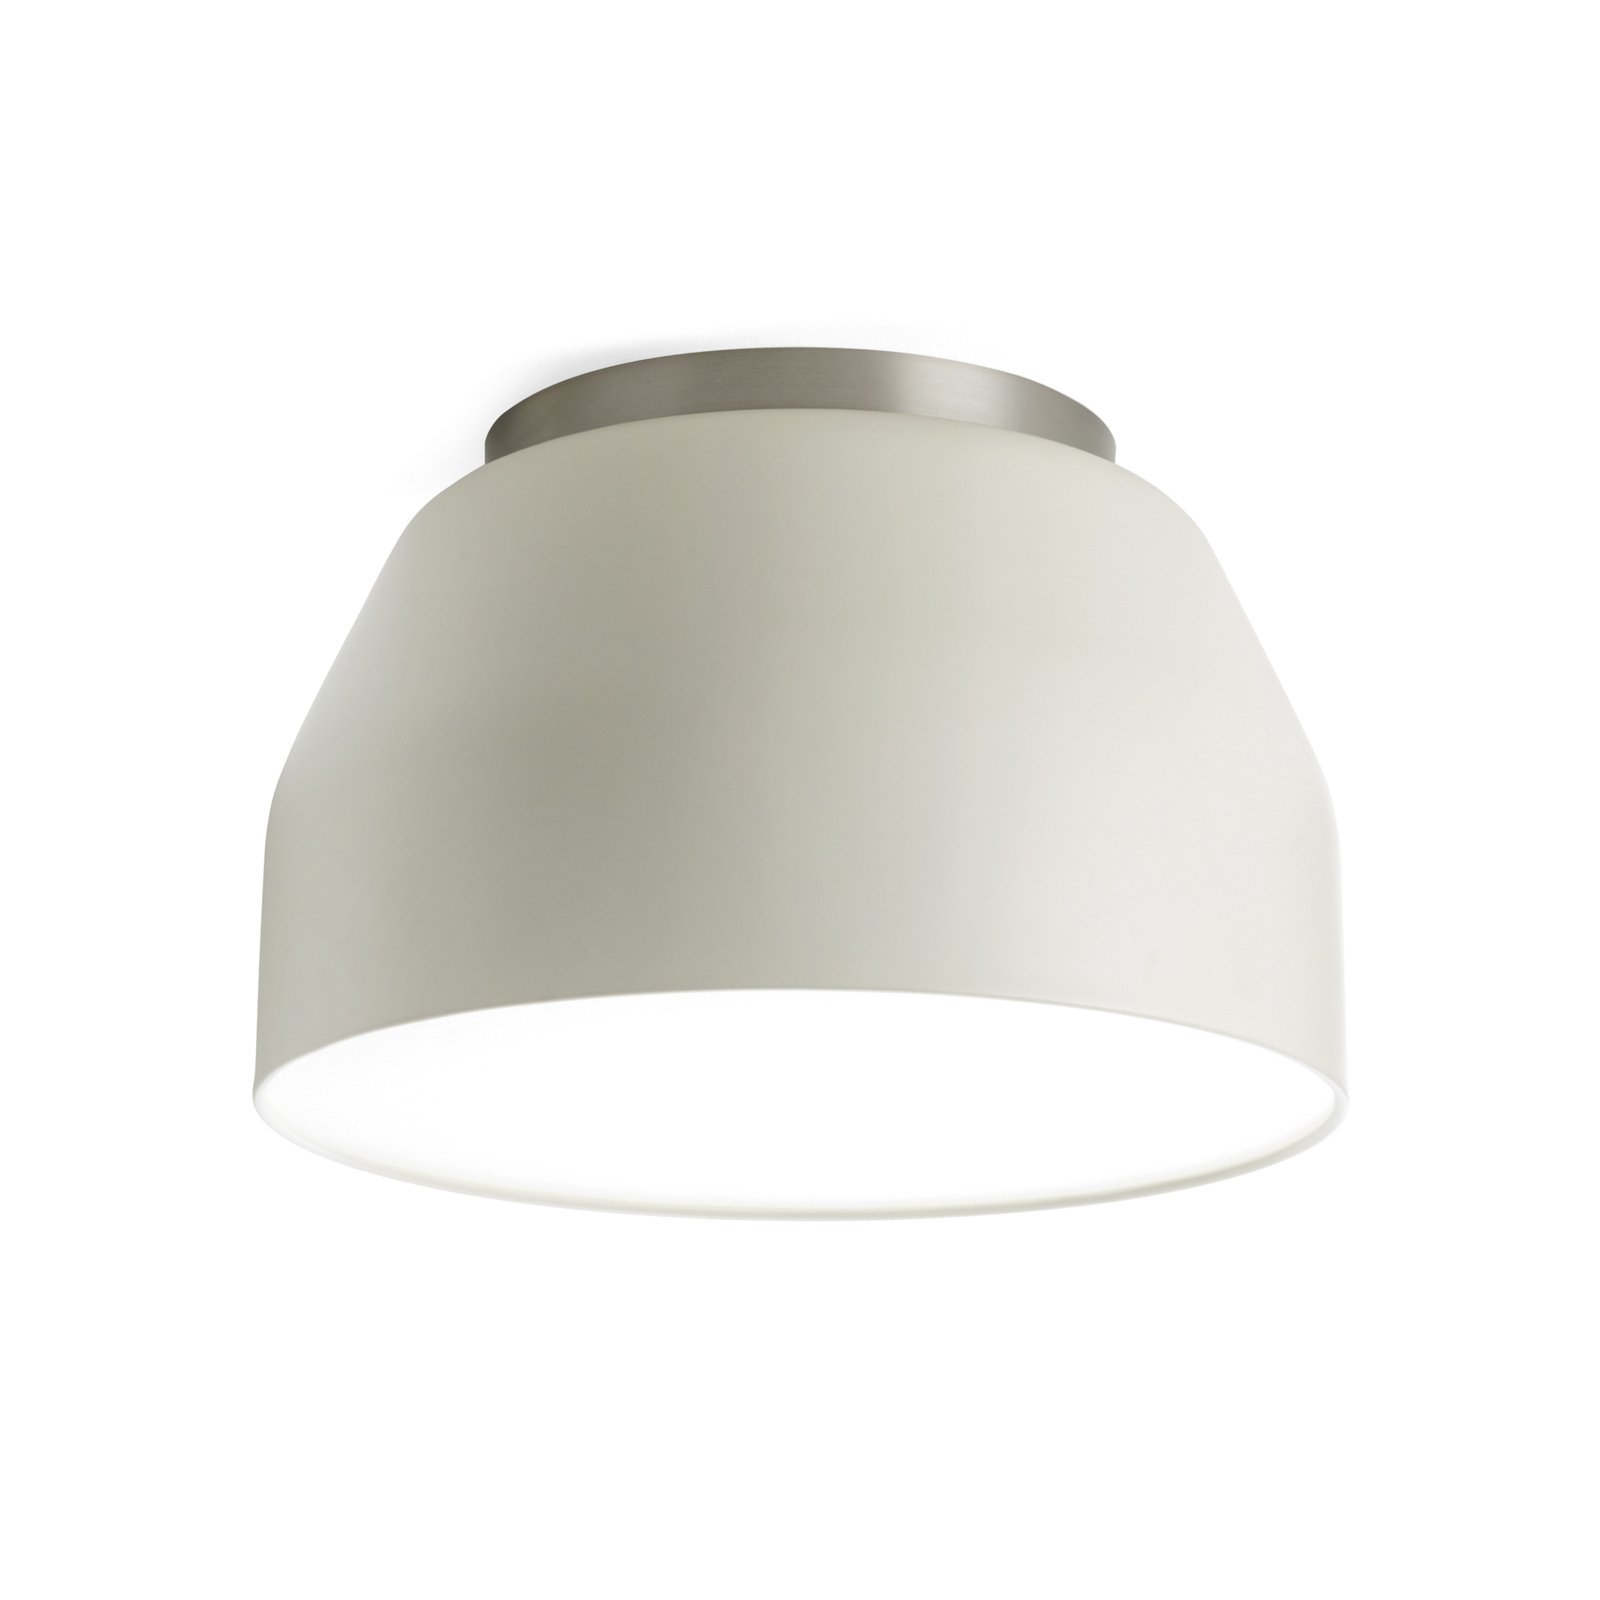 Mug ceiling light, cream white with chrome detail Ø40cm